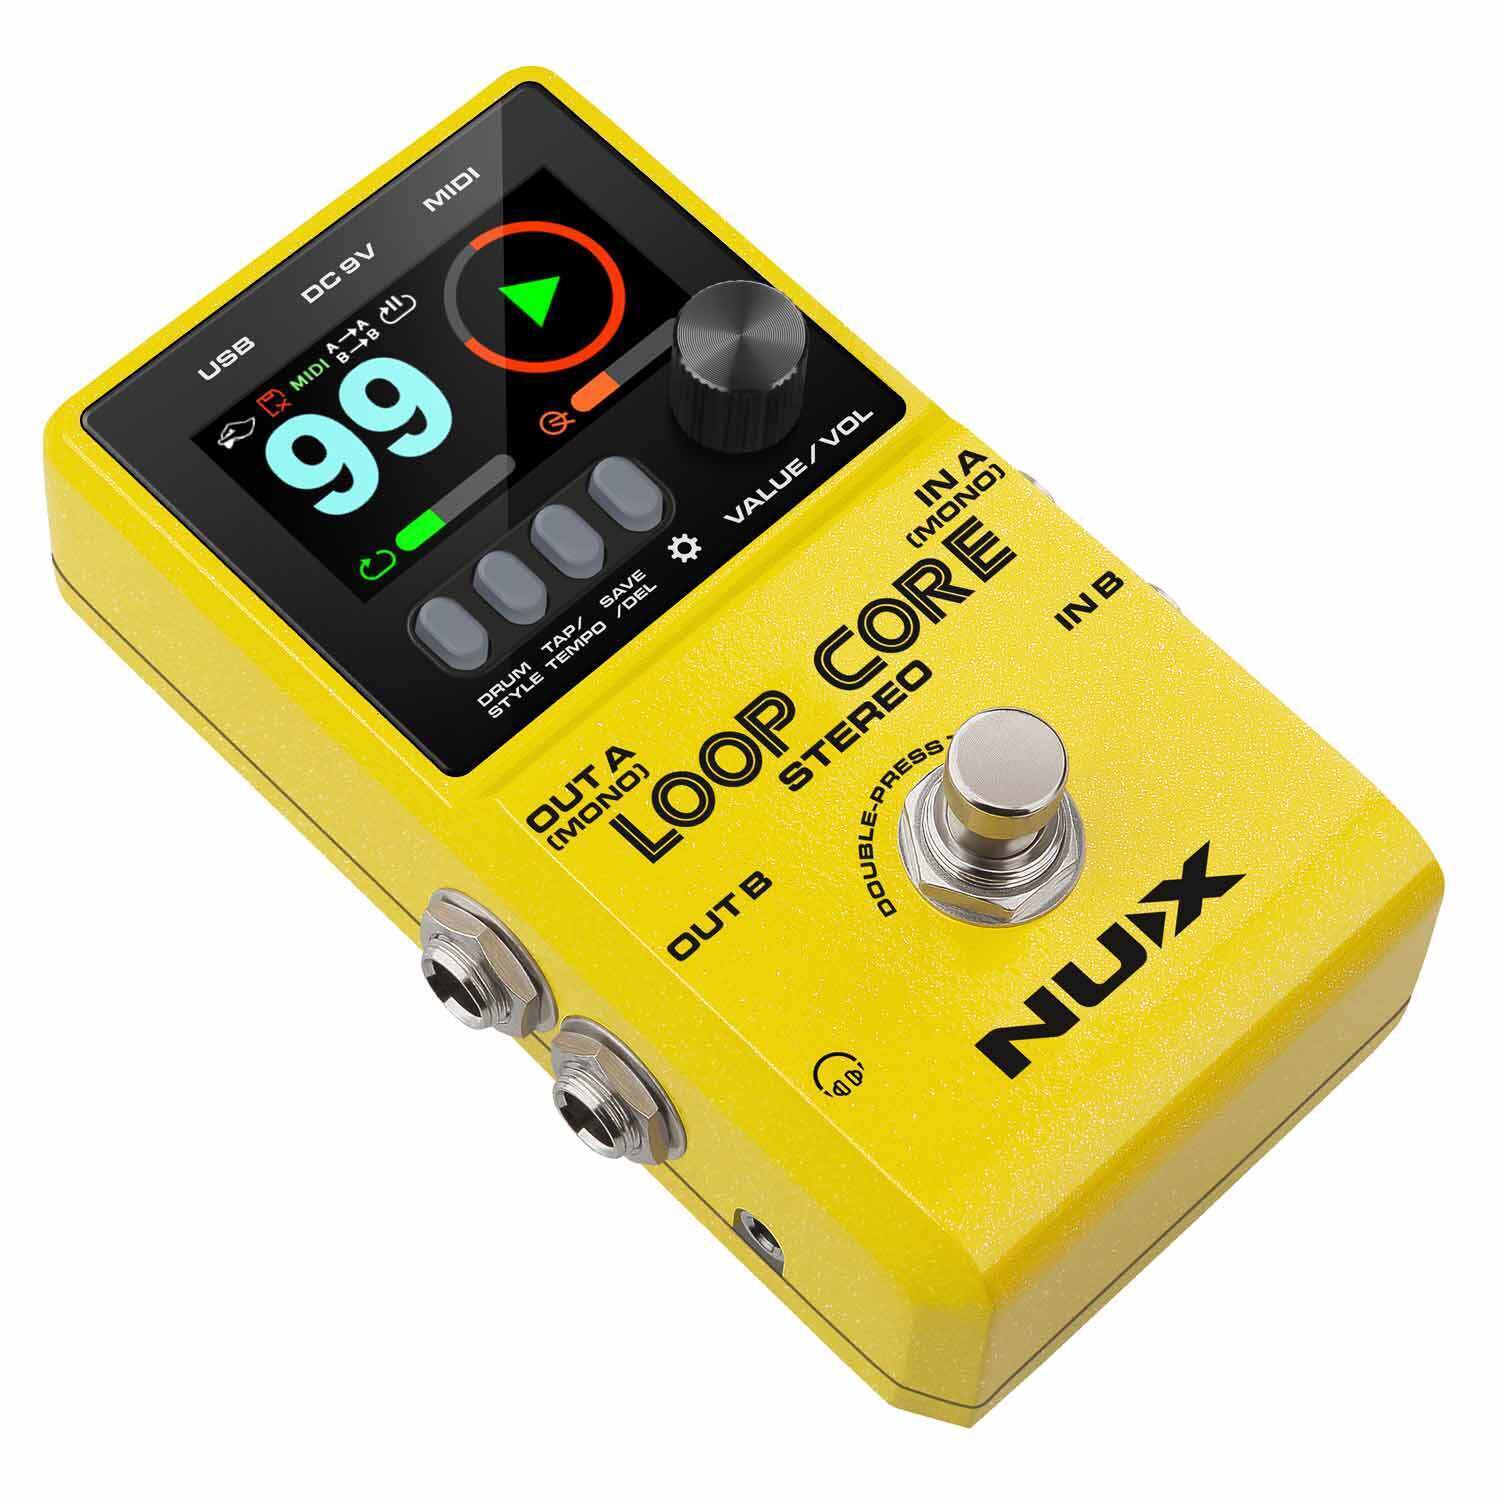 NUX Loop Core Deluxe MK2 Looper Guitar Effects Pedal